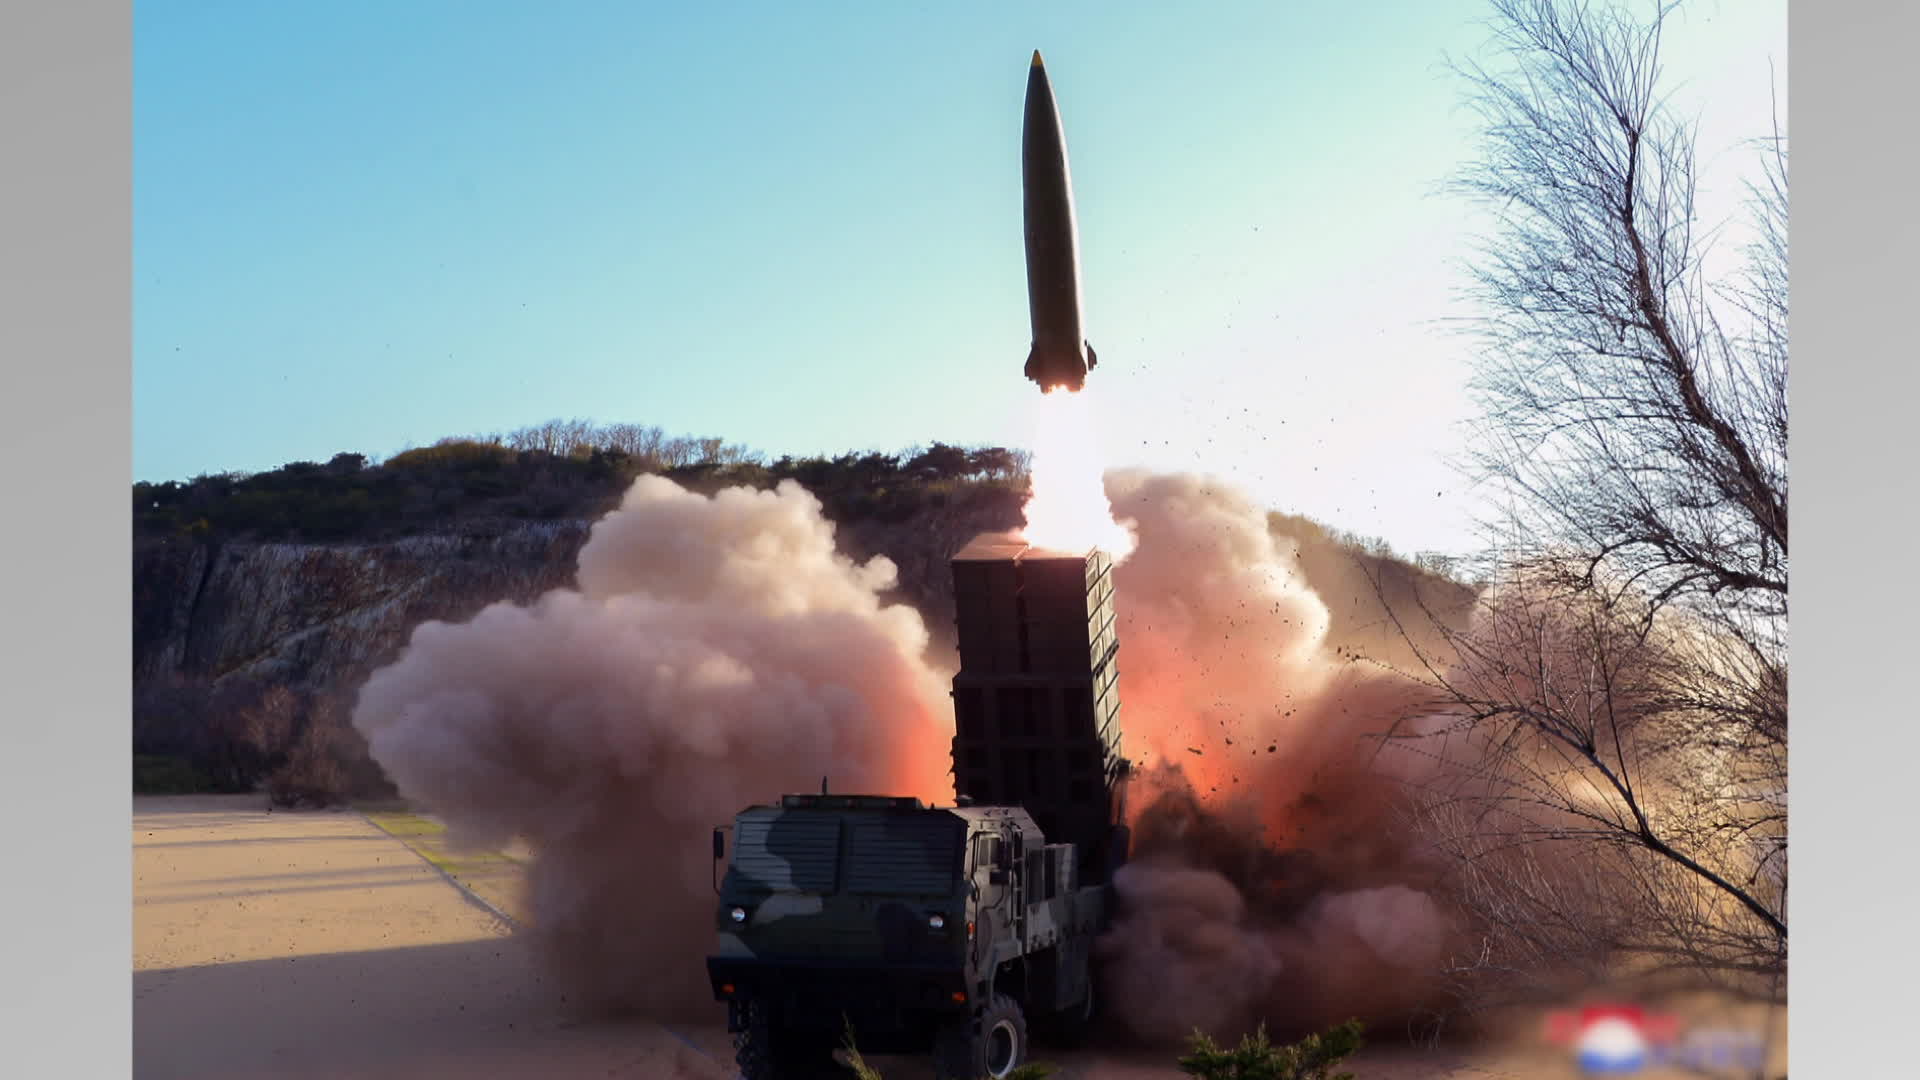 북한이 지난 4월 17일 시험 발사에 성공했다고 주장하며 공개한 신형 전술유도무기. 이동식 발사차량에 탑재된 발사관에서 미사일이 발사되고 있다.